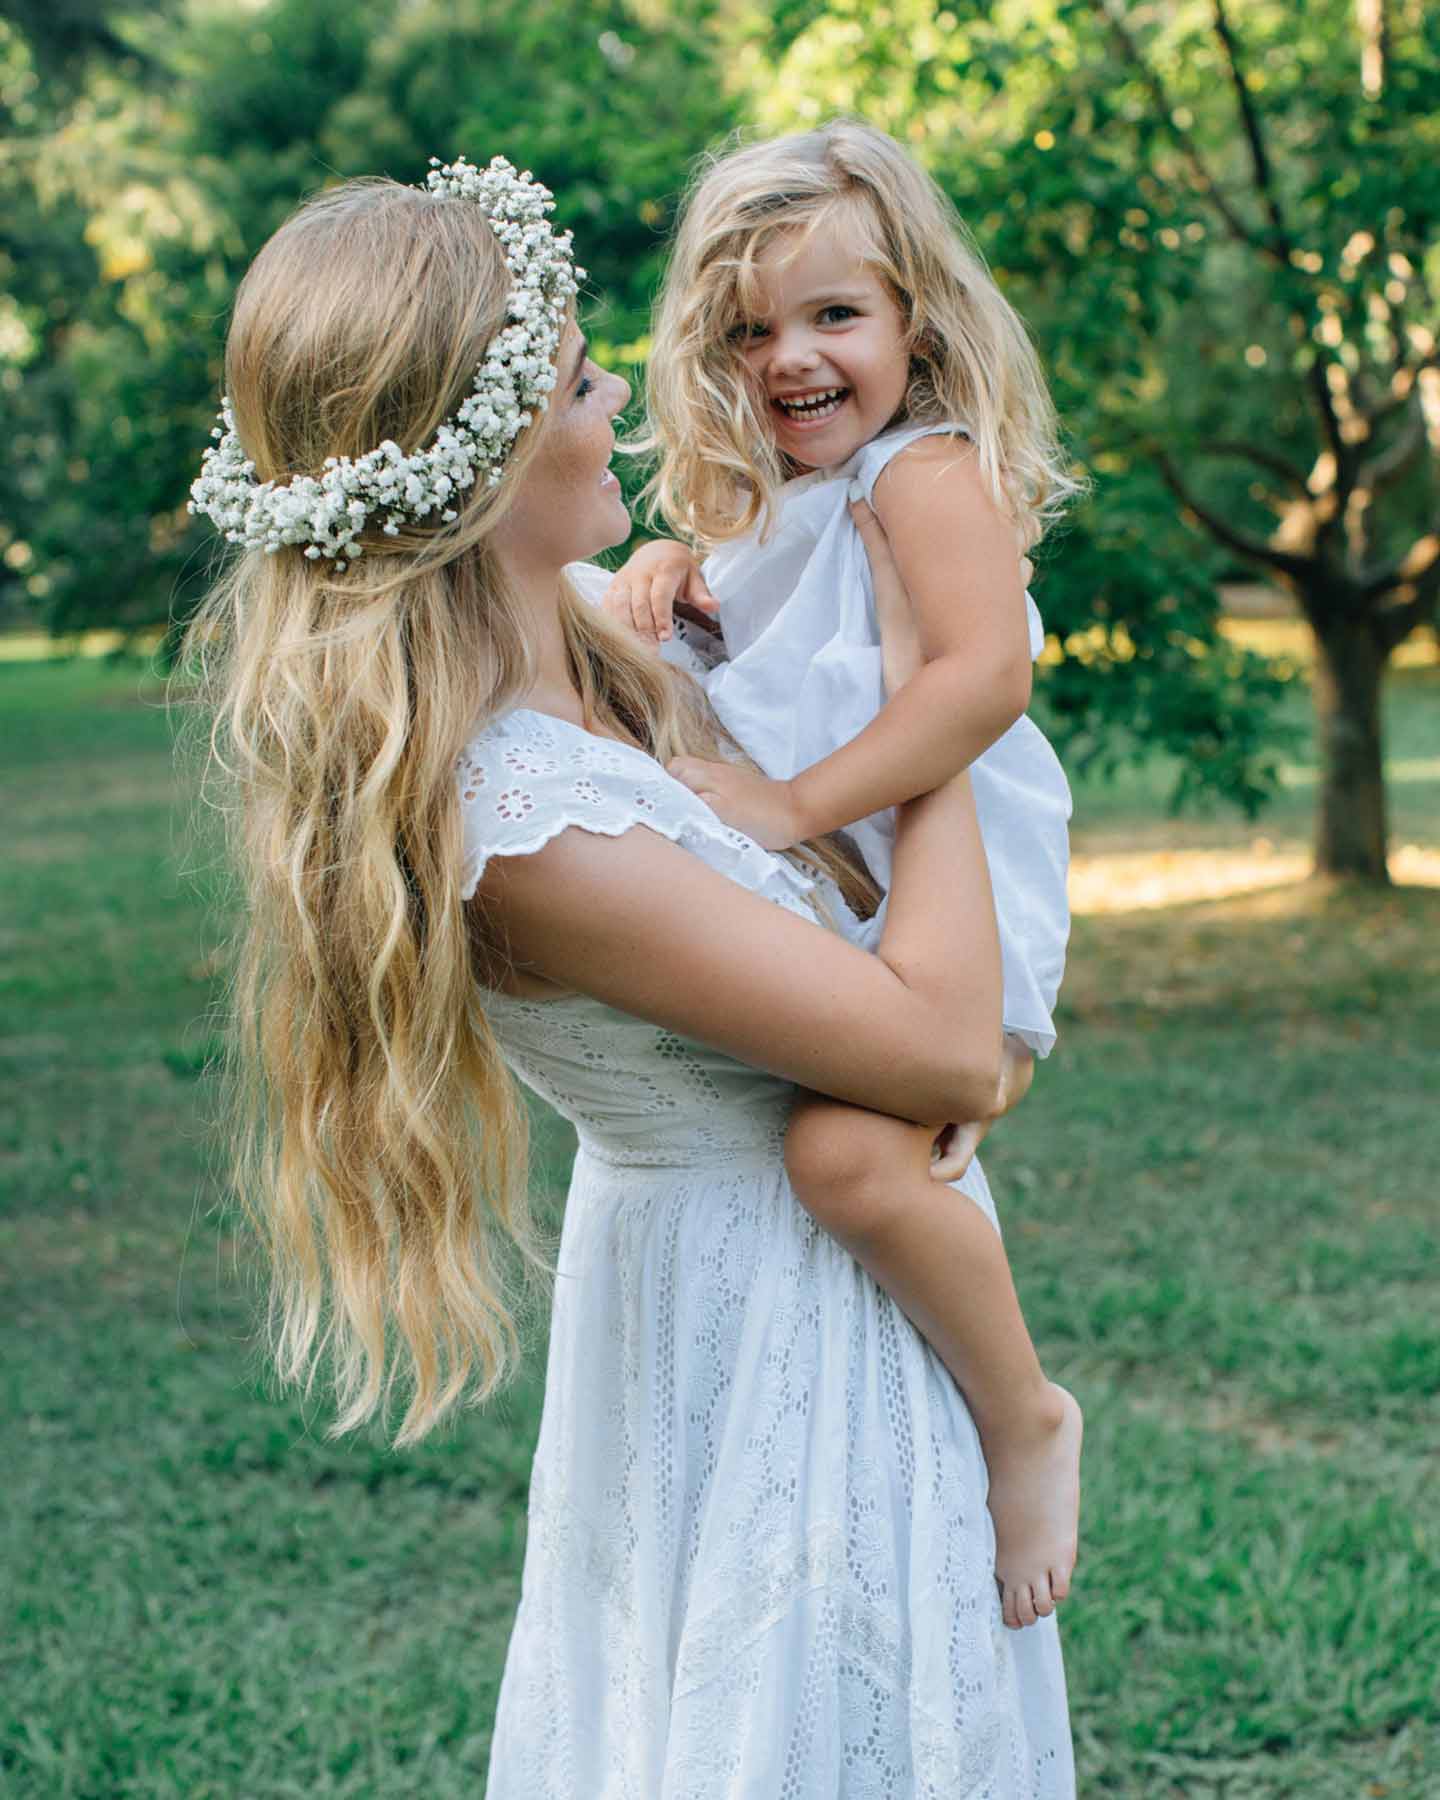 Mutter im weißen Kleid und mit Blumenkranz im Haar, hält ihre Tochter lachend im Arm am Tag der Namensgebungsfeier